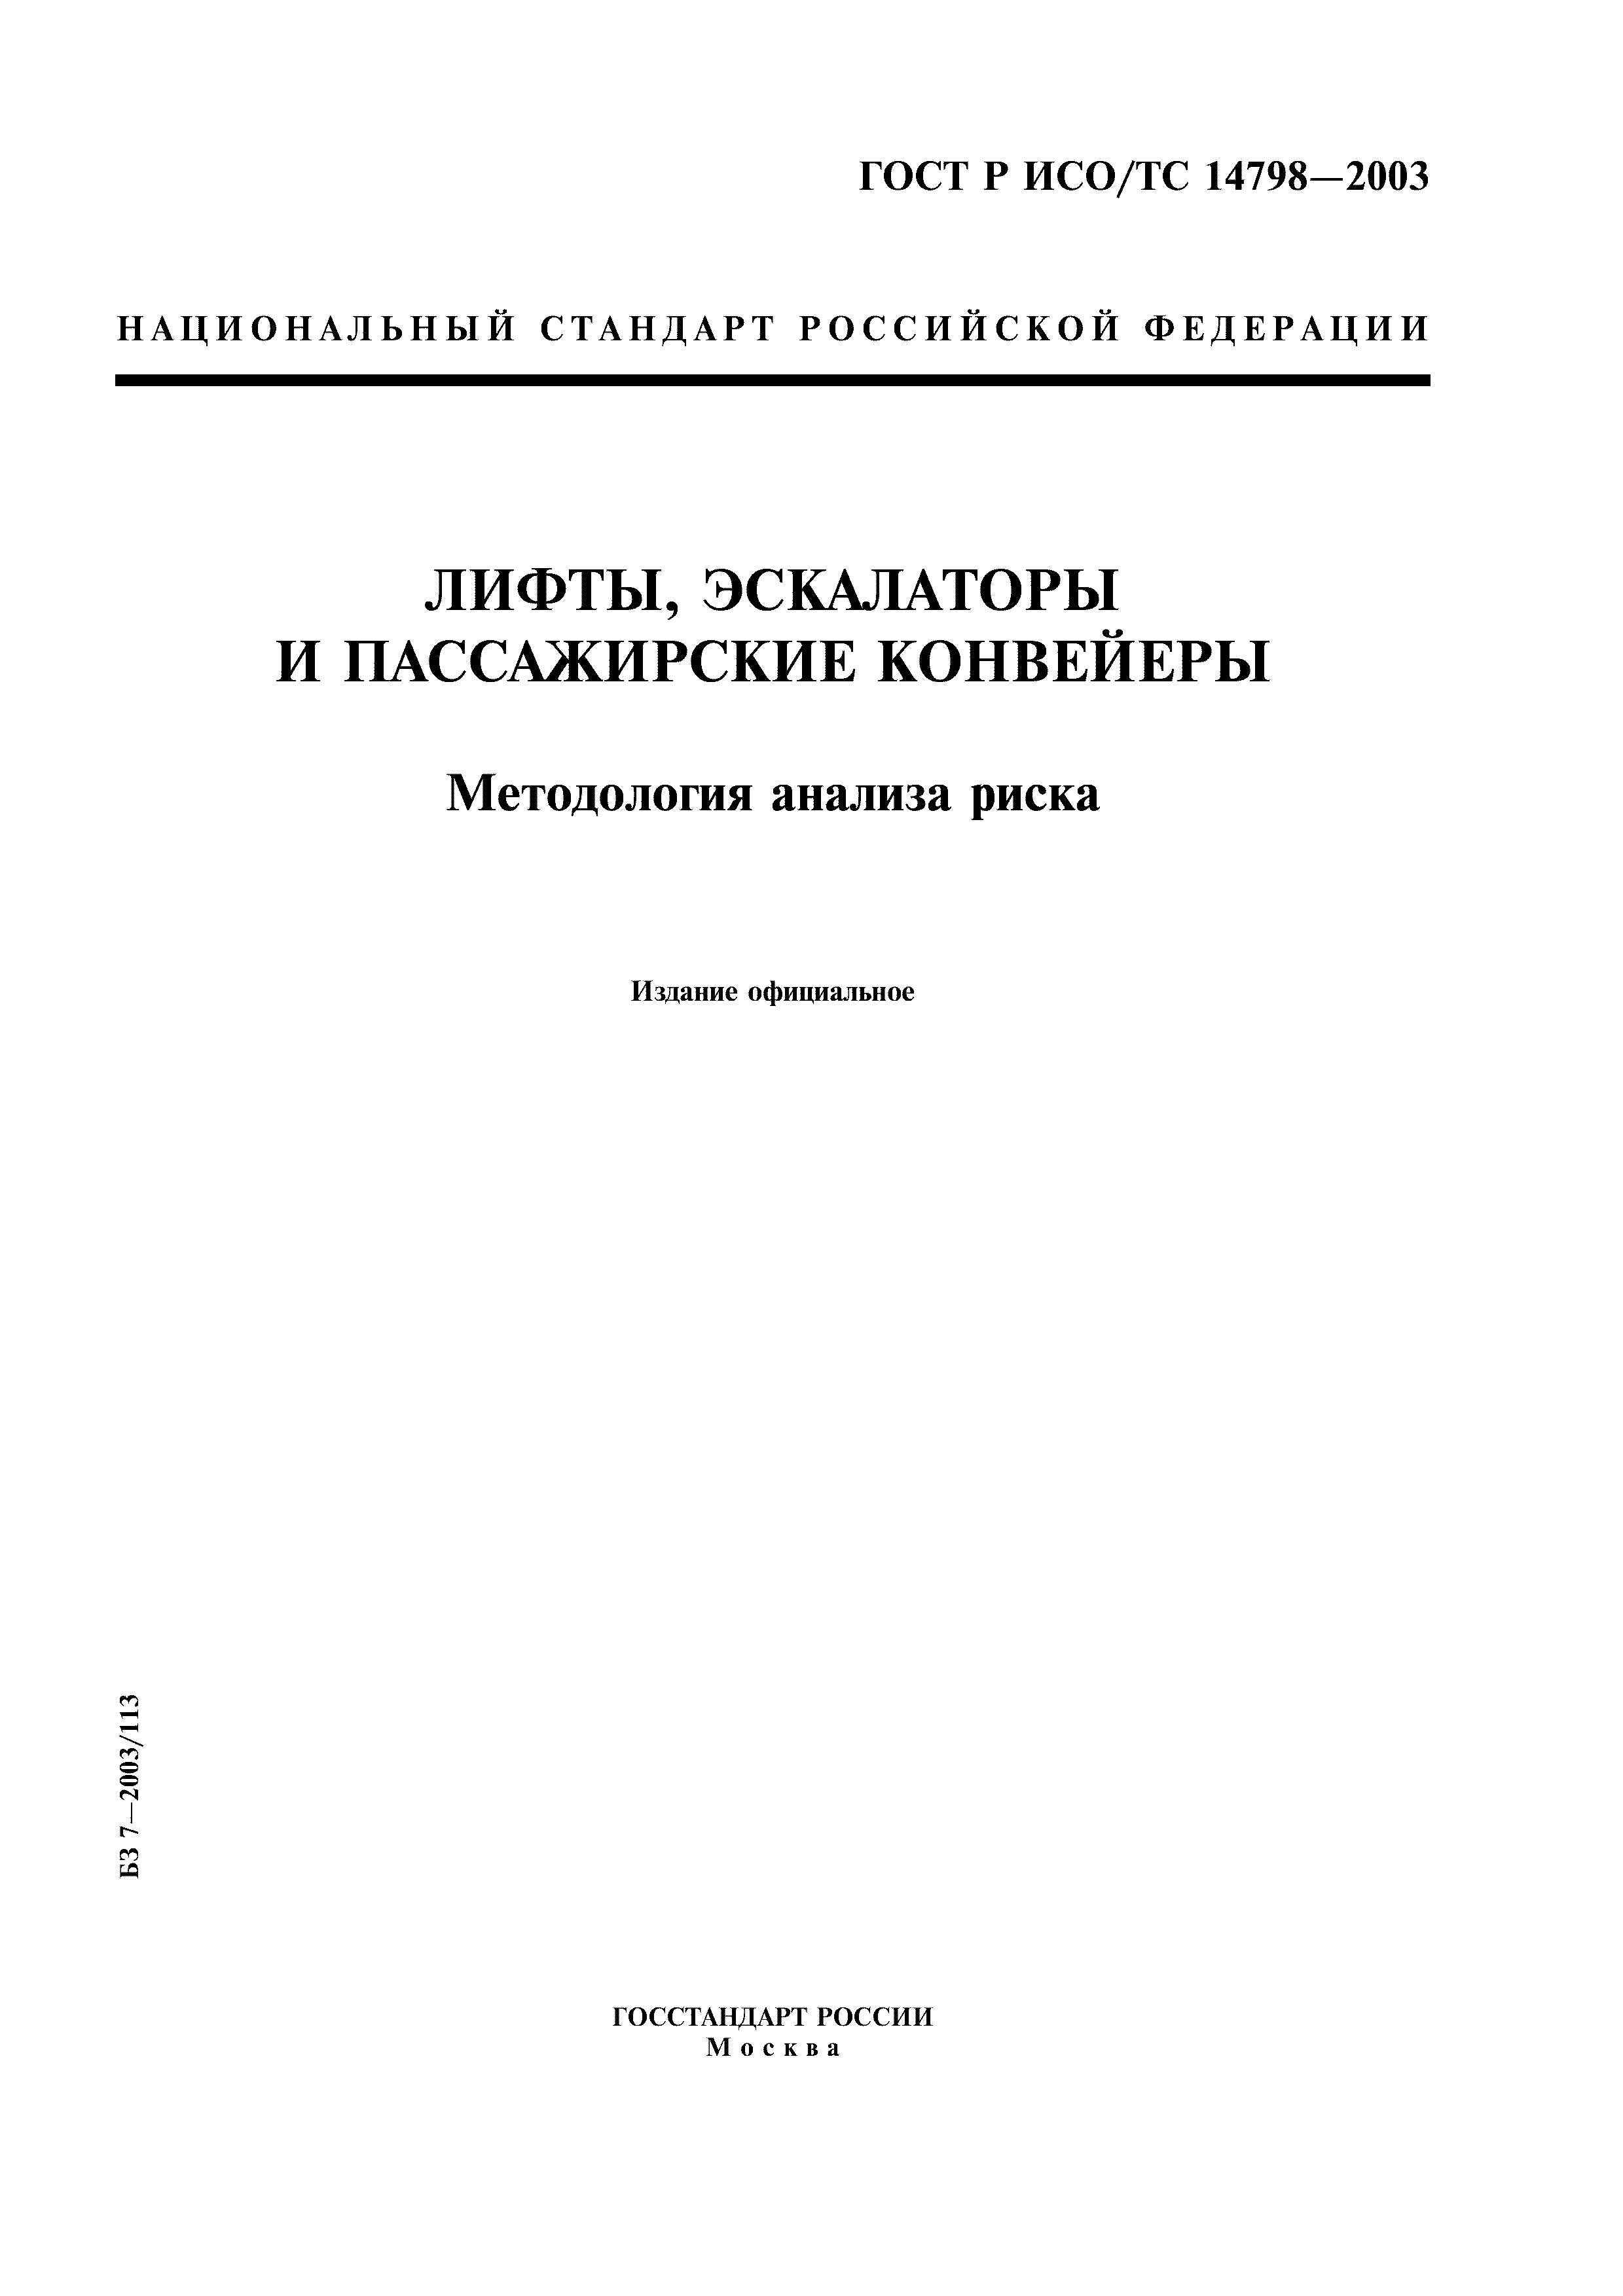 ГОСТ Р ИСО/ТС 14798-2003